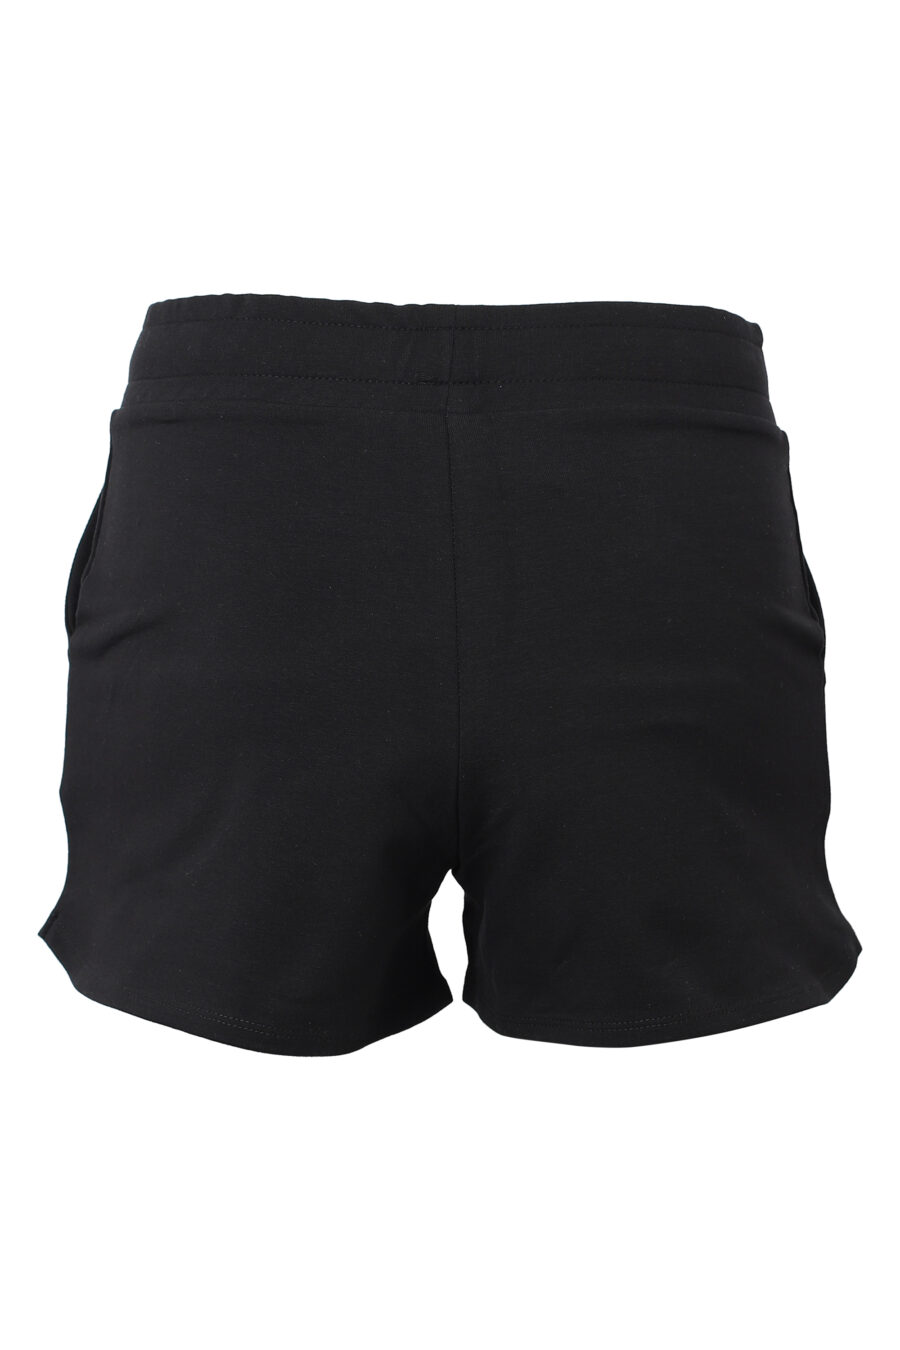 Black shorts with rhinestone logo - IMG 9848